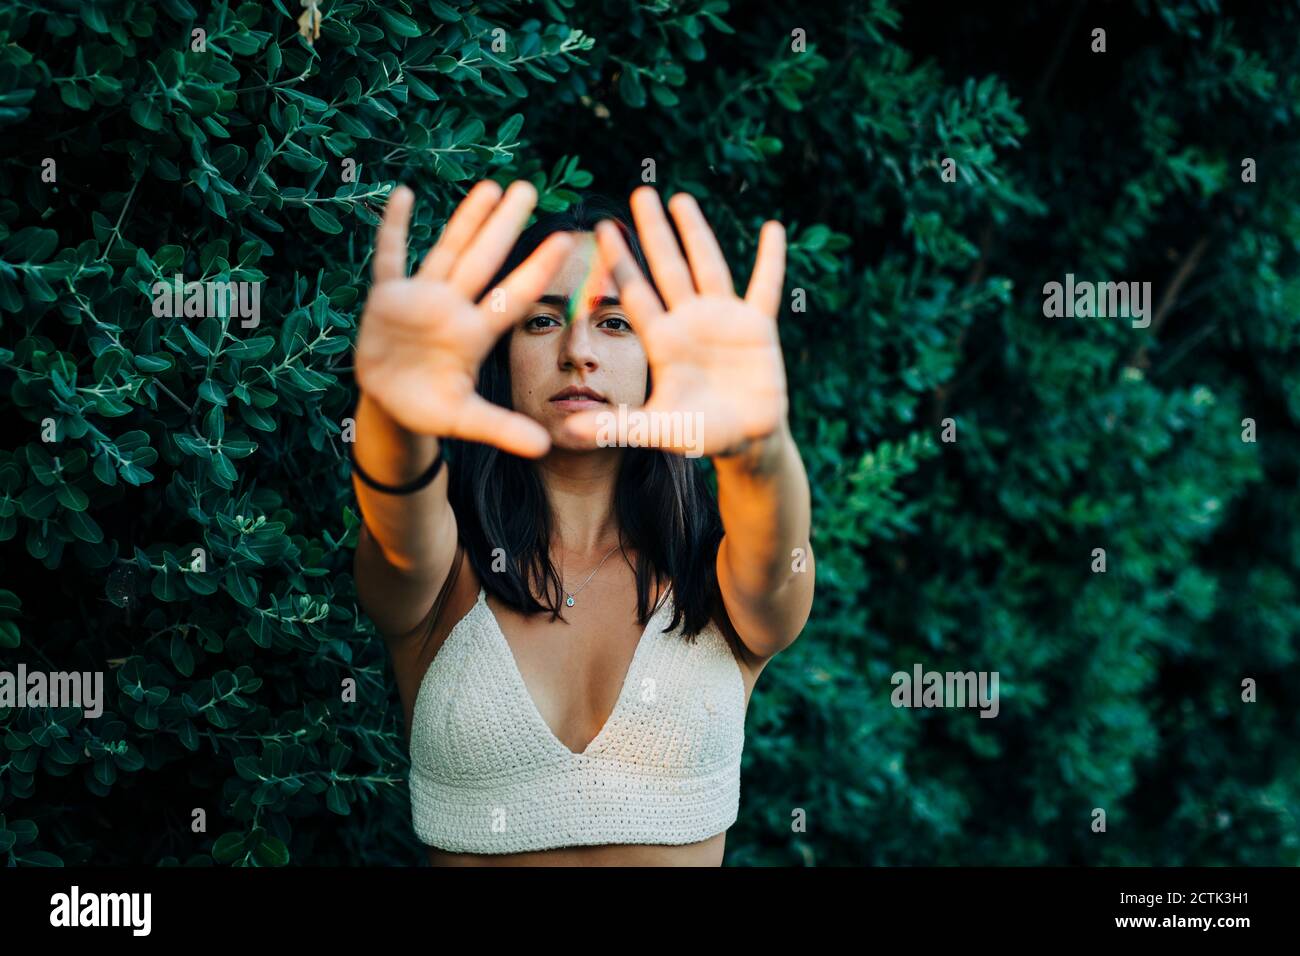 Frau zeigt Stop-Geste, während sie im Park steht Stockfoto